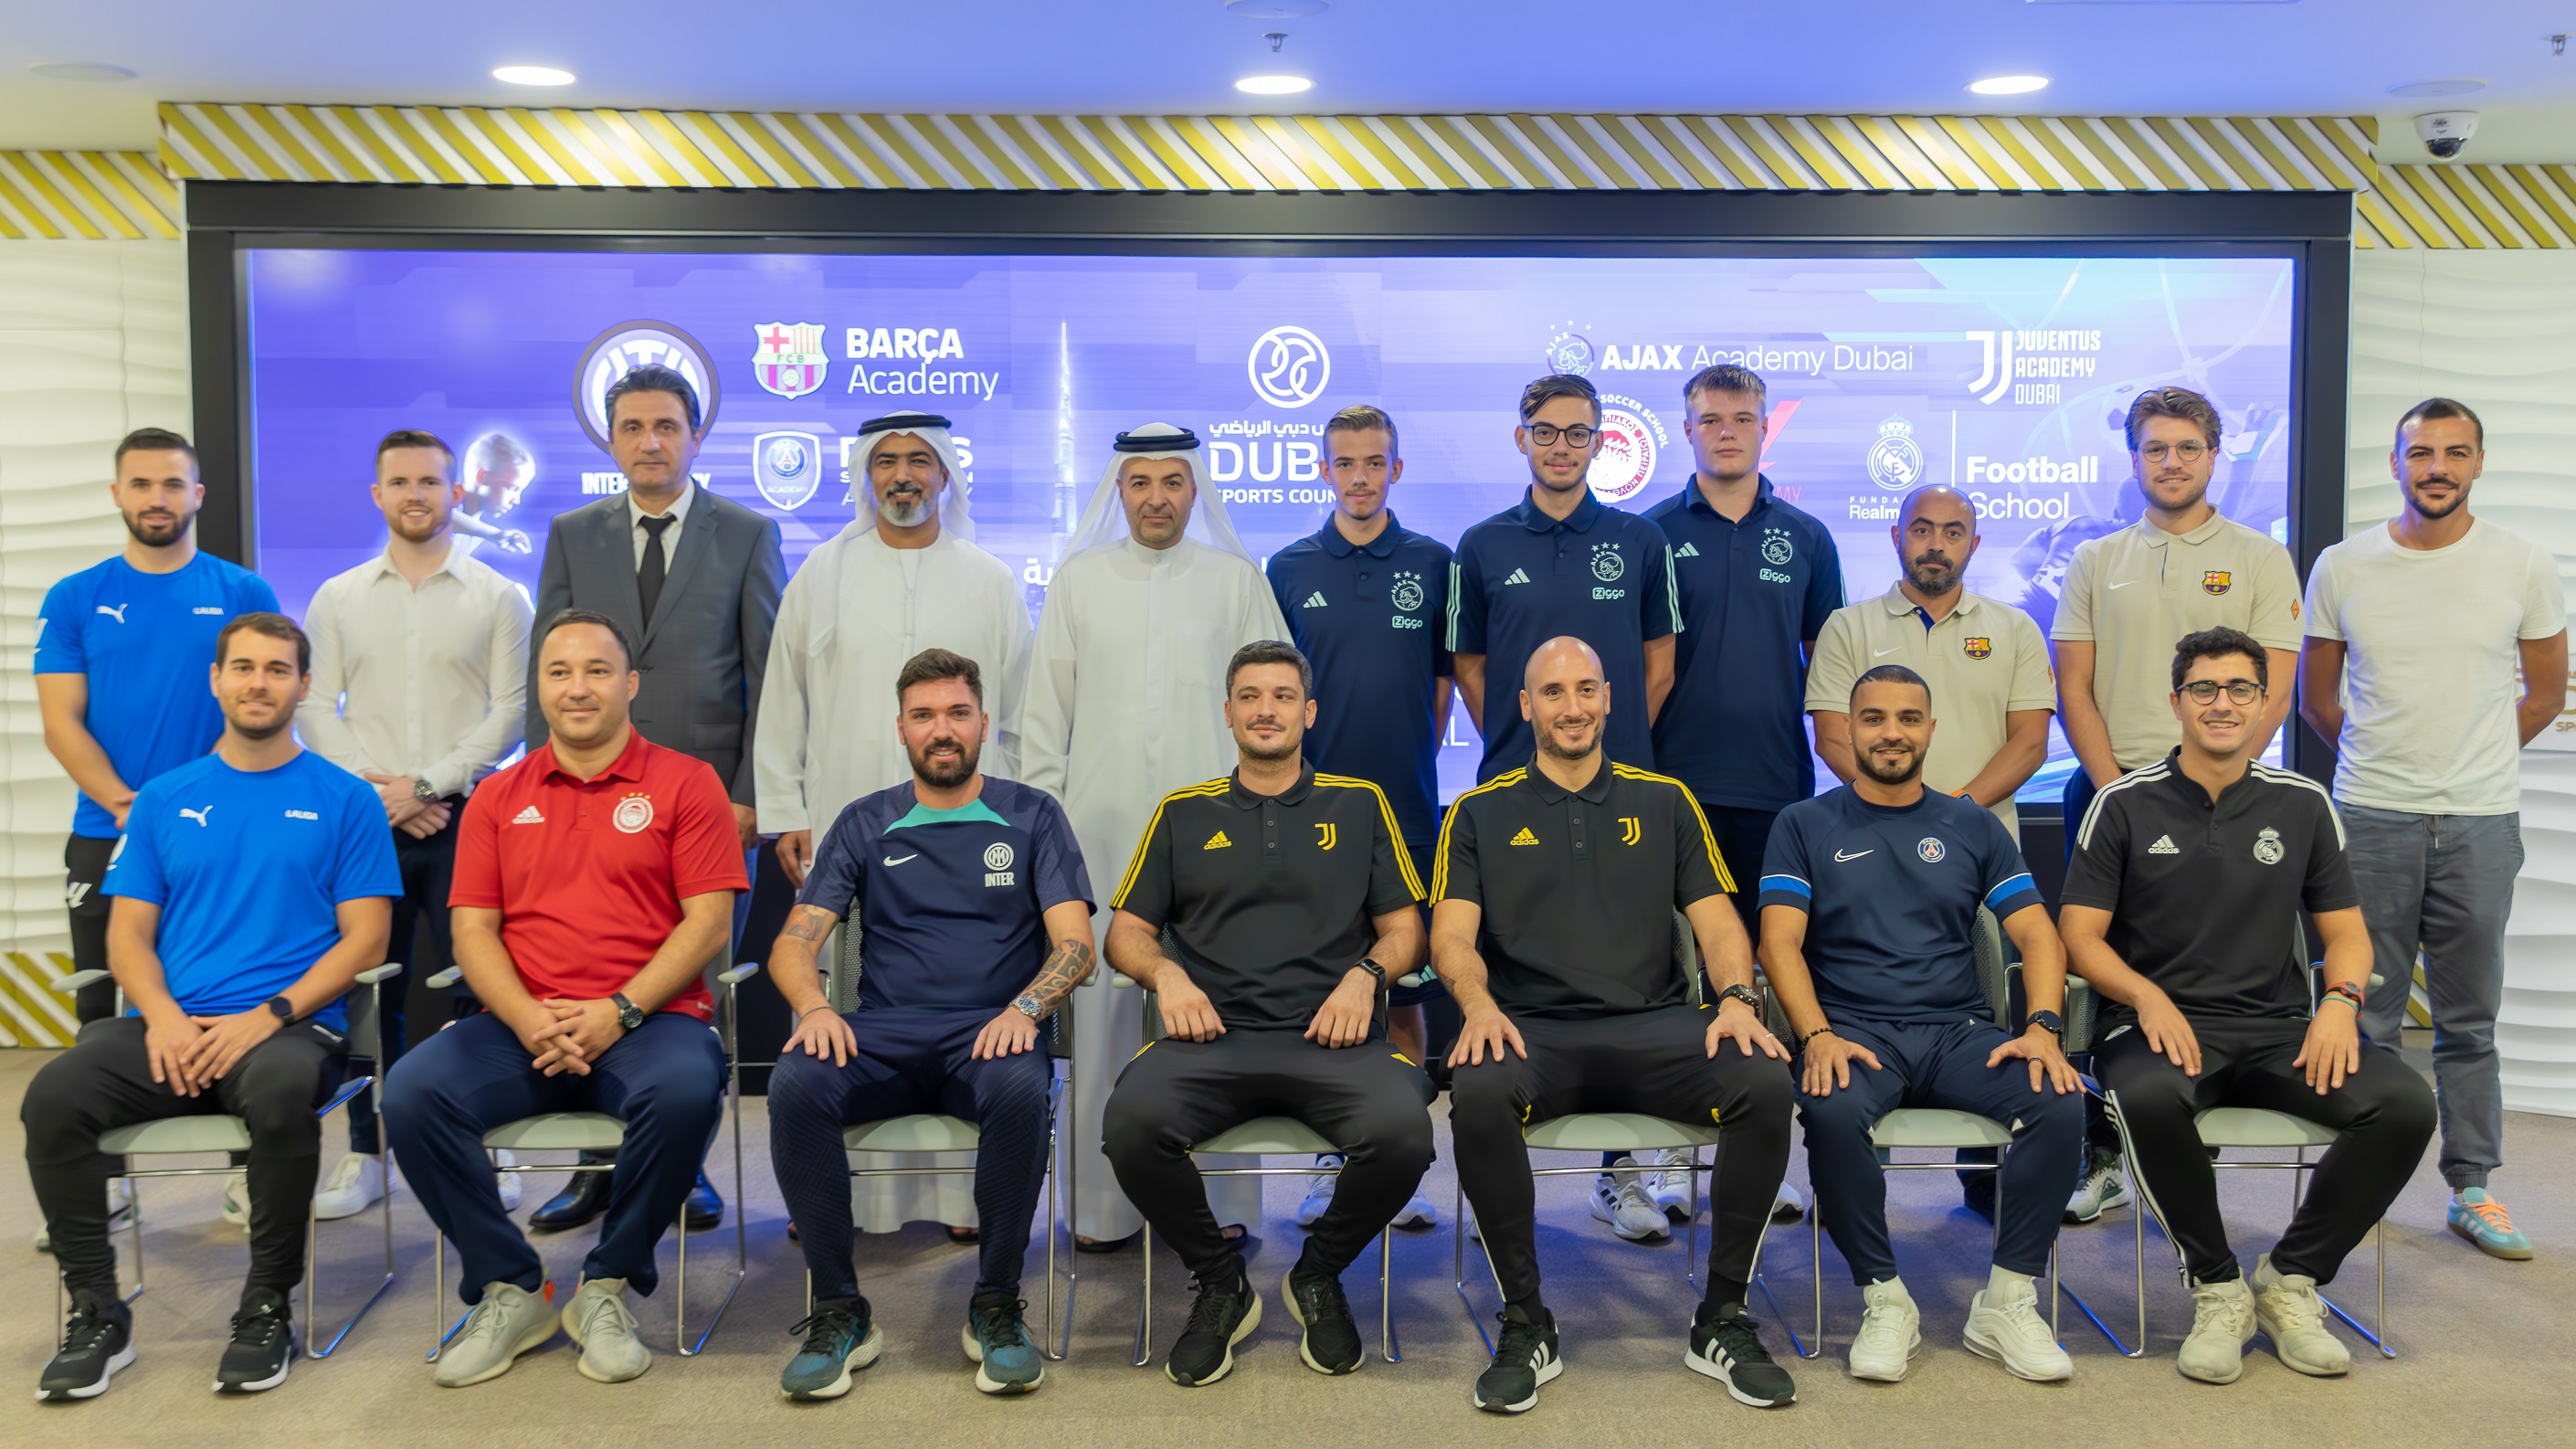 Το Αθλητικό Συμβούλιο του Ντουμπάι συναντάται με διεθνείς ακαδημίες ποδοσφαίρου για να προωθήσει την ανακάλυψη ταλέντων